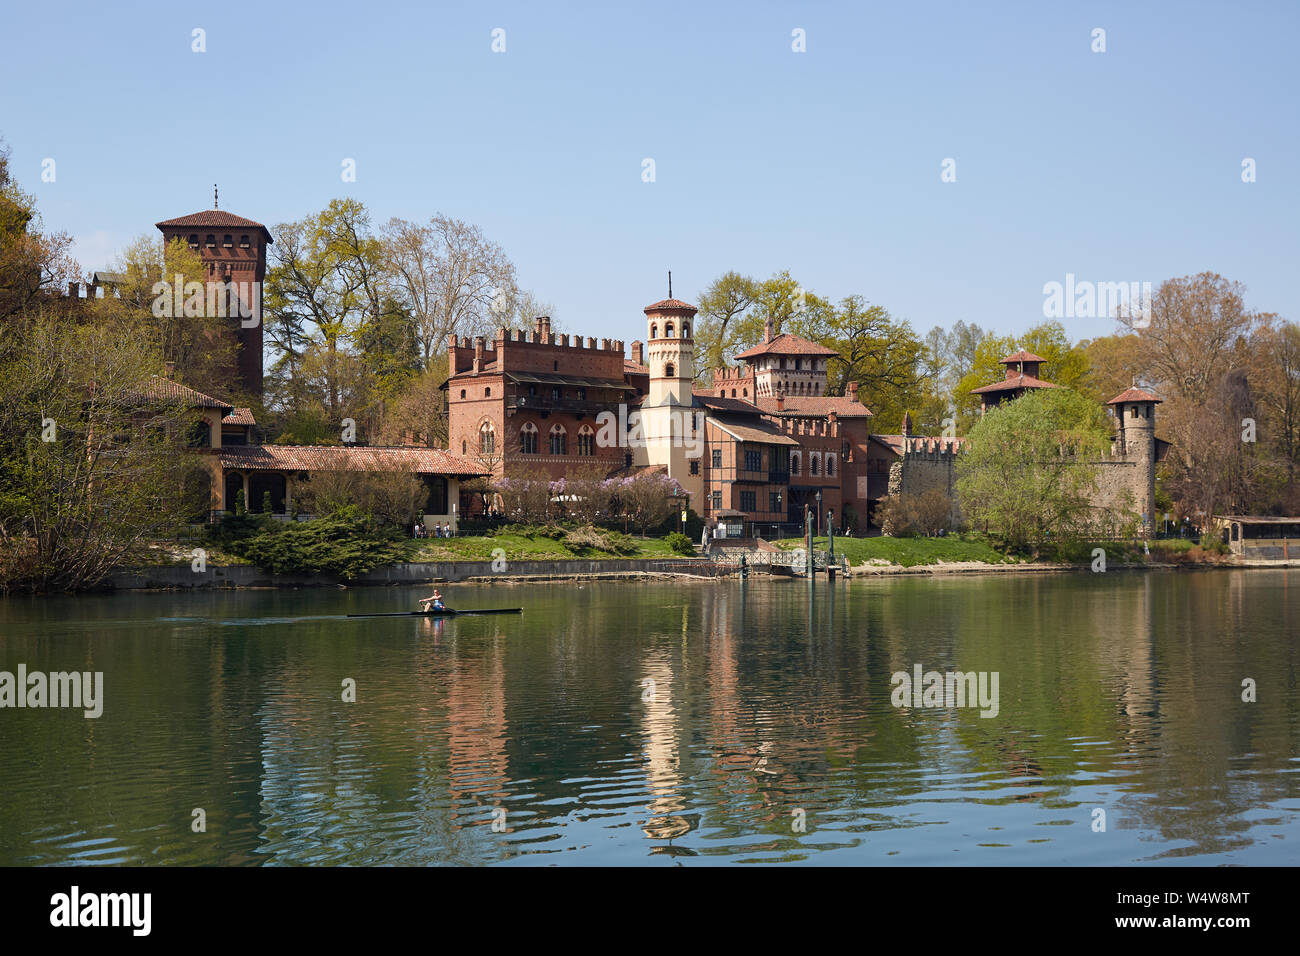 Turín, Italia - 31 de marzo de 2019: Borgo Medievale, pueblo medieval y el castillo con el río Po en un día soleado, el azul claro del cielo en el Piamonte, Turín, Italia. Foto de stock